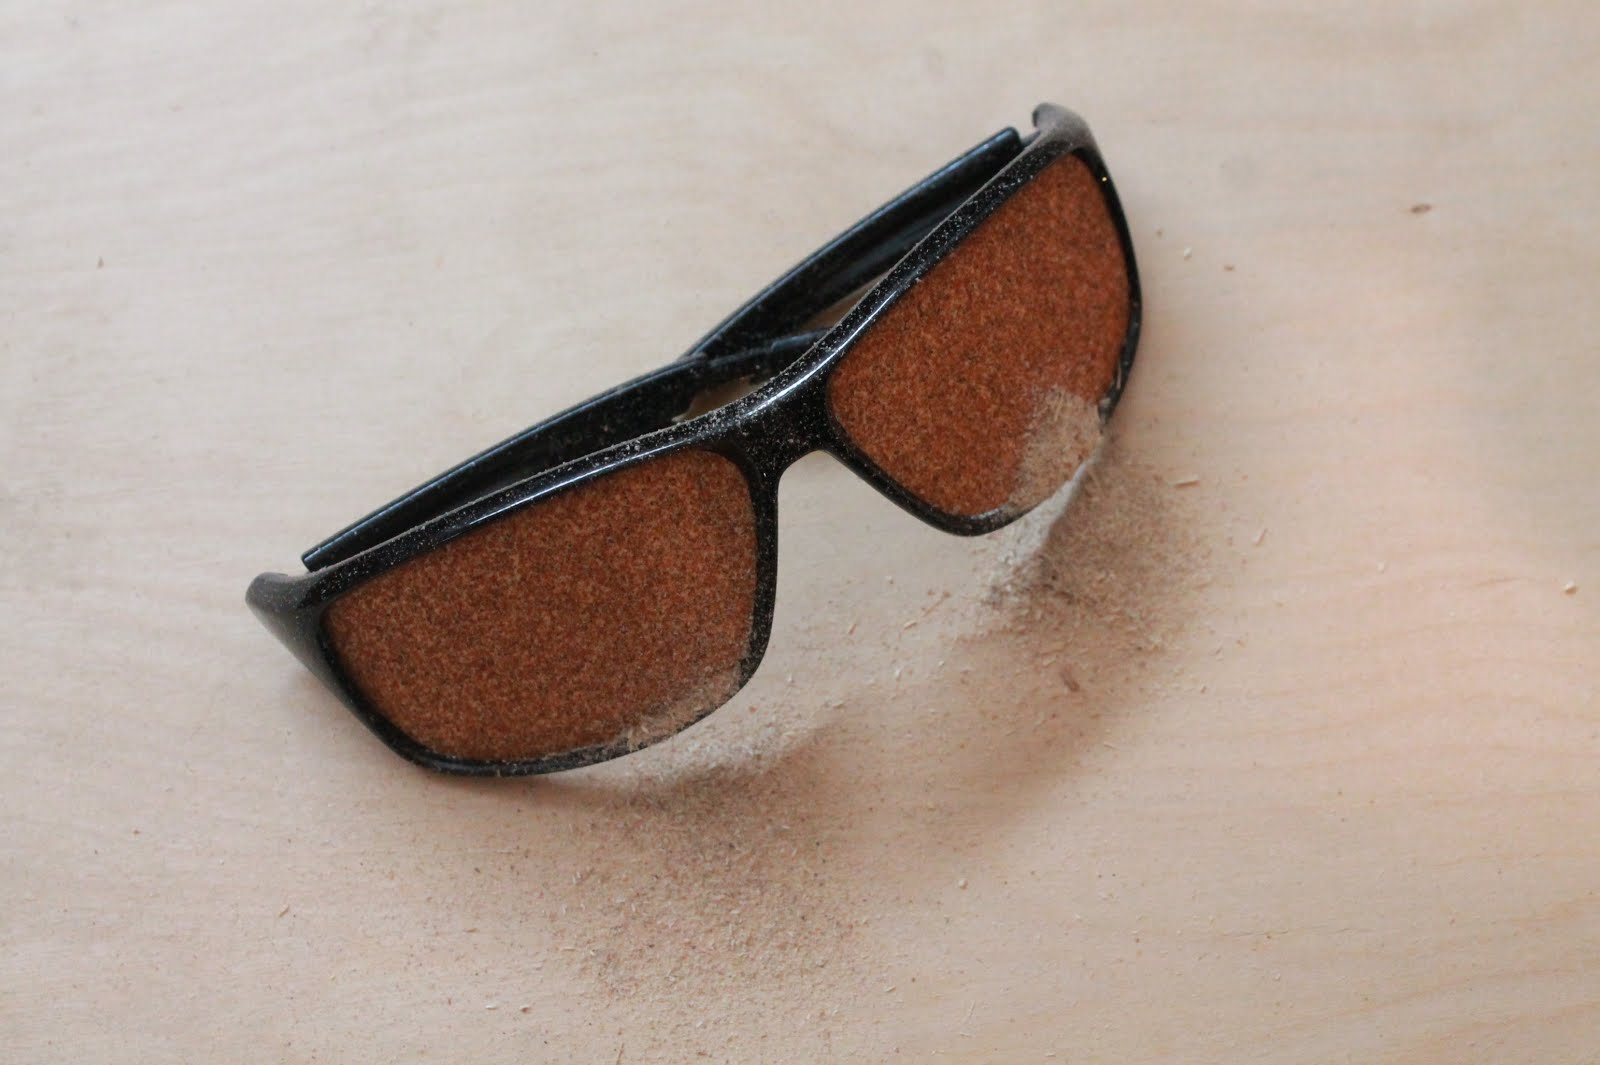 Sandpaper glasses